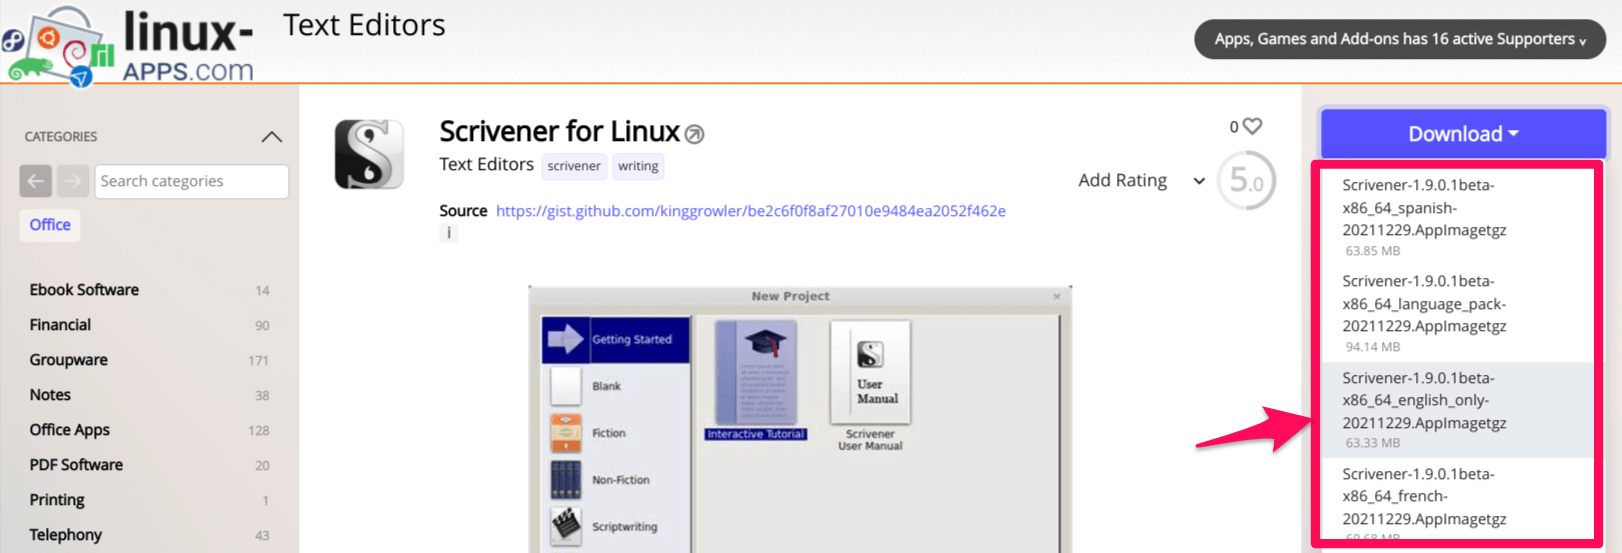 download scrivener for linux appimage